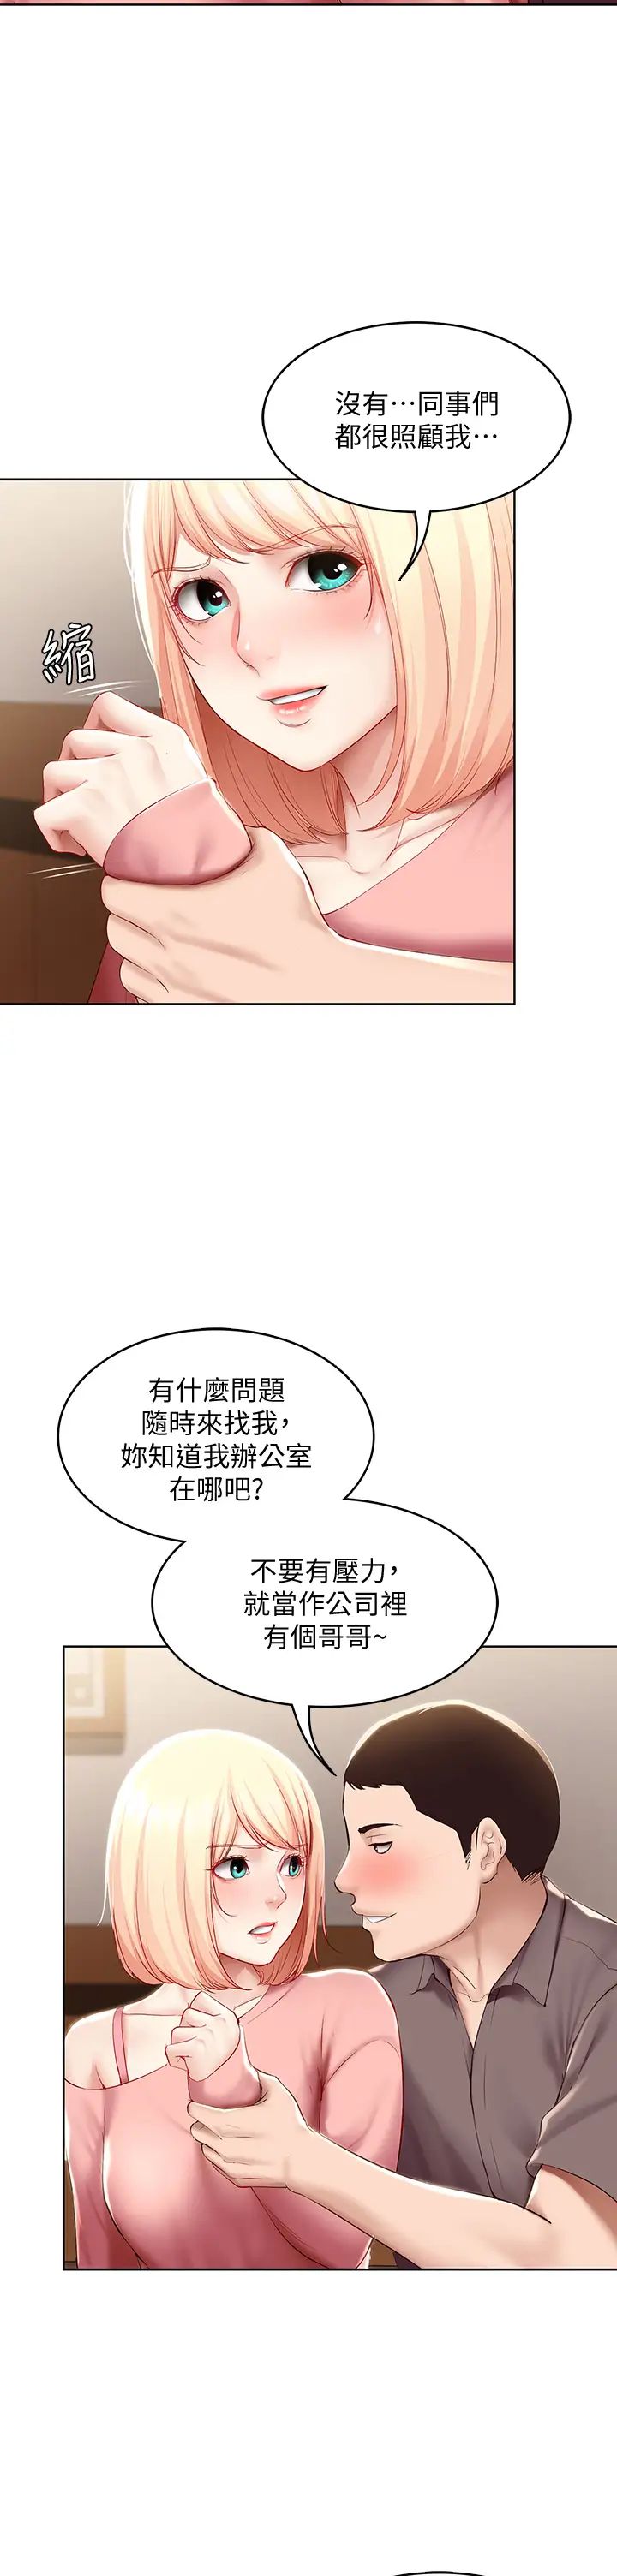 韩国污漫画 寄宿日記 第63话培琳的直球诱惑 13